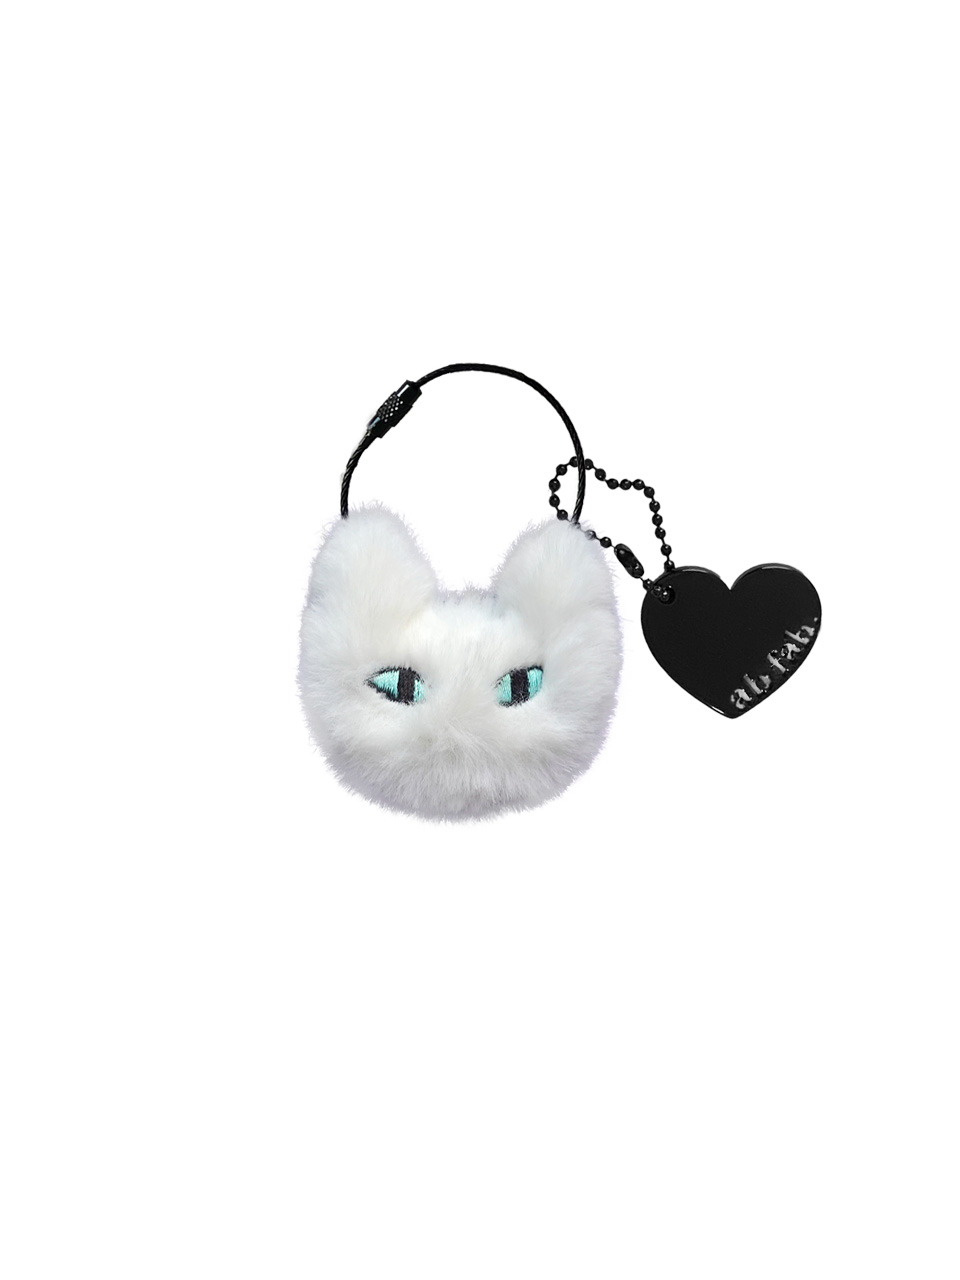 myam-mi key ring ( White mint cat )